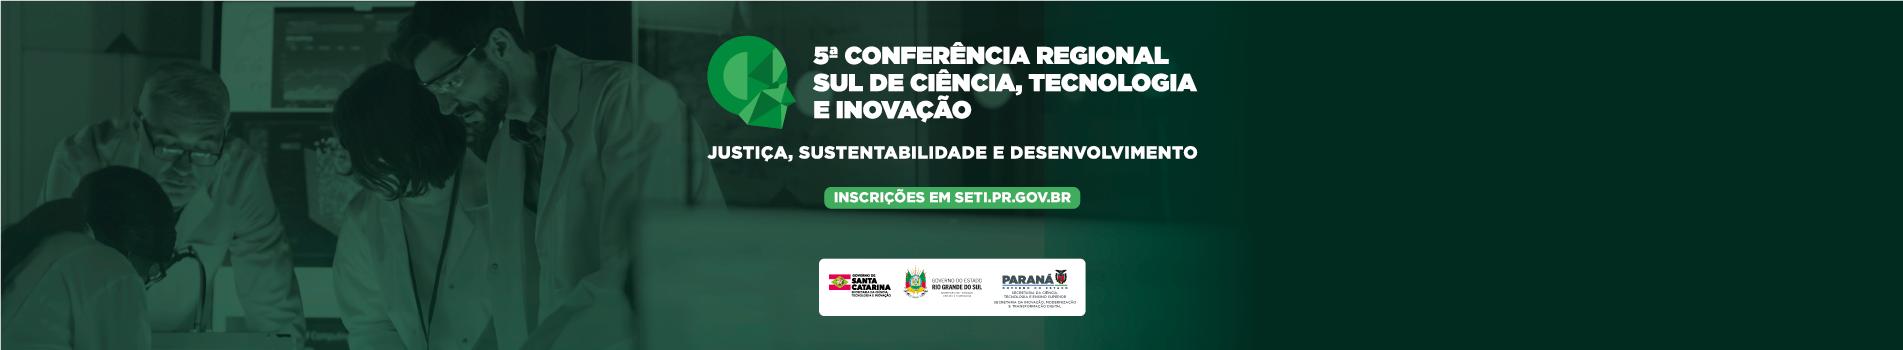 5ª Conferência Regional Sul de Ciência, Tecnologia e Inovação